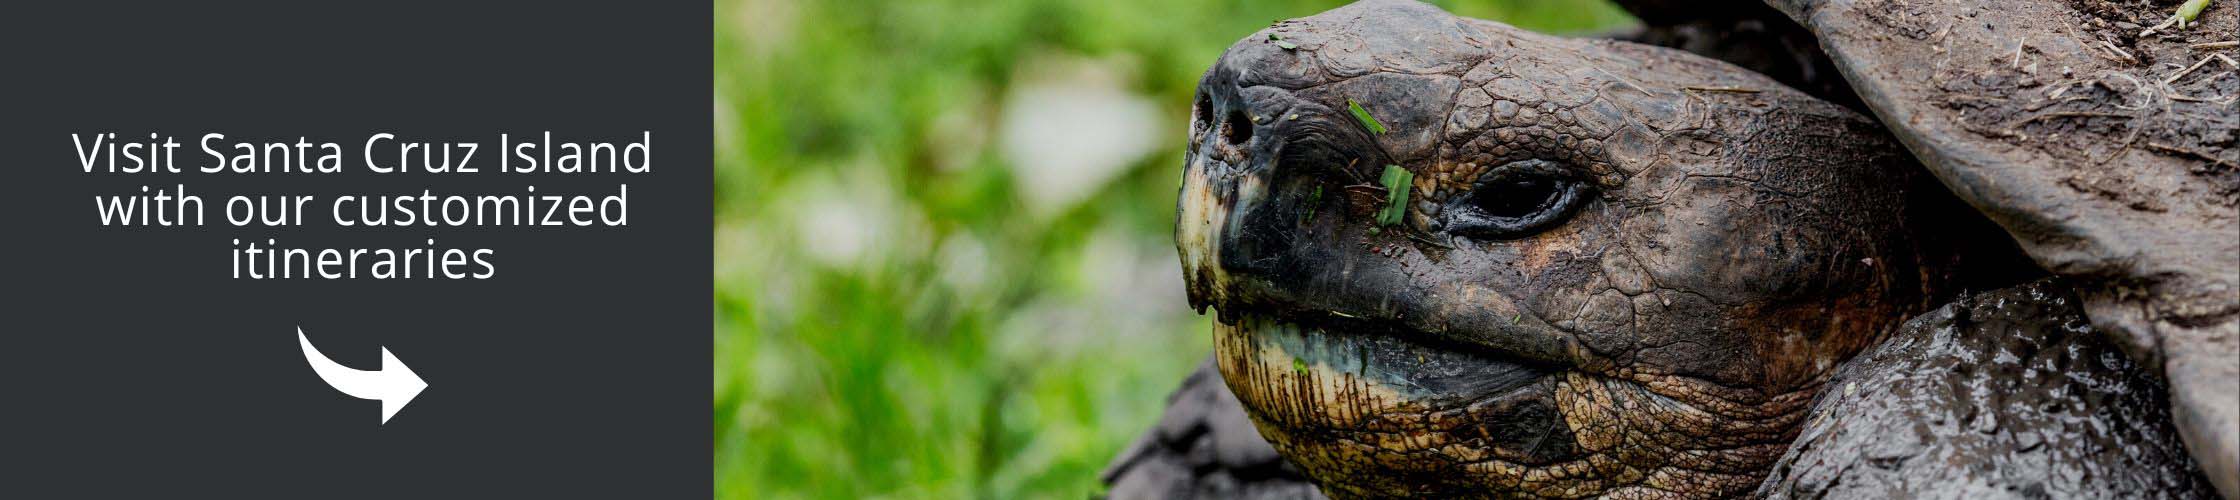 Visit Santa Cruz and see giant tortoises